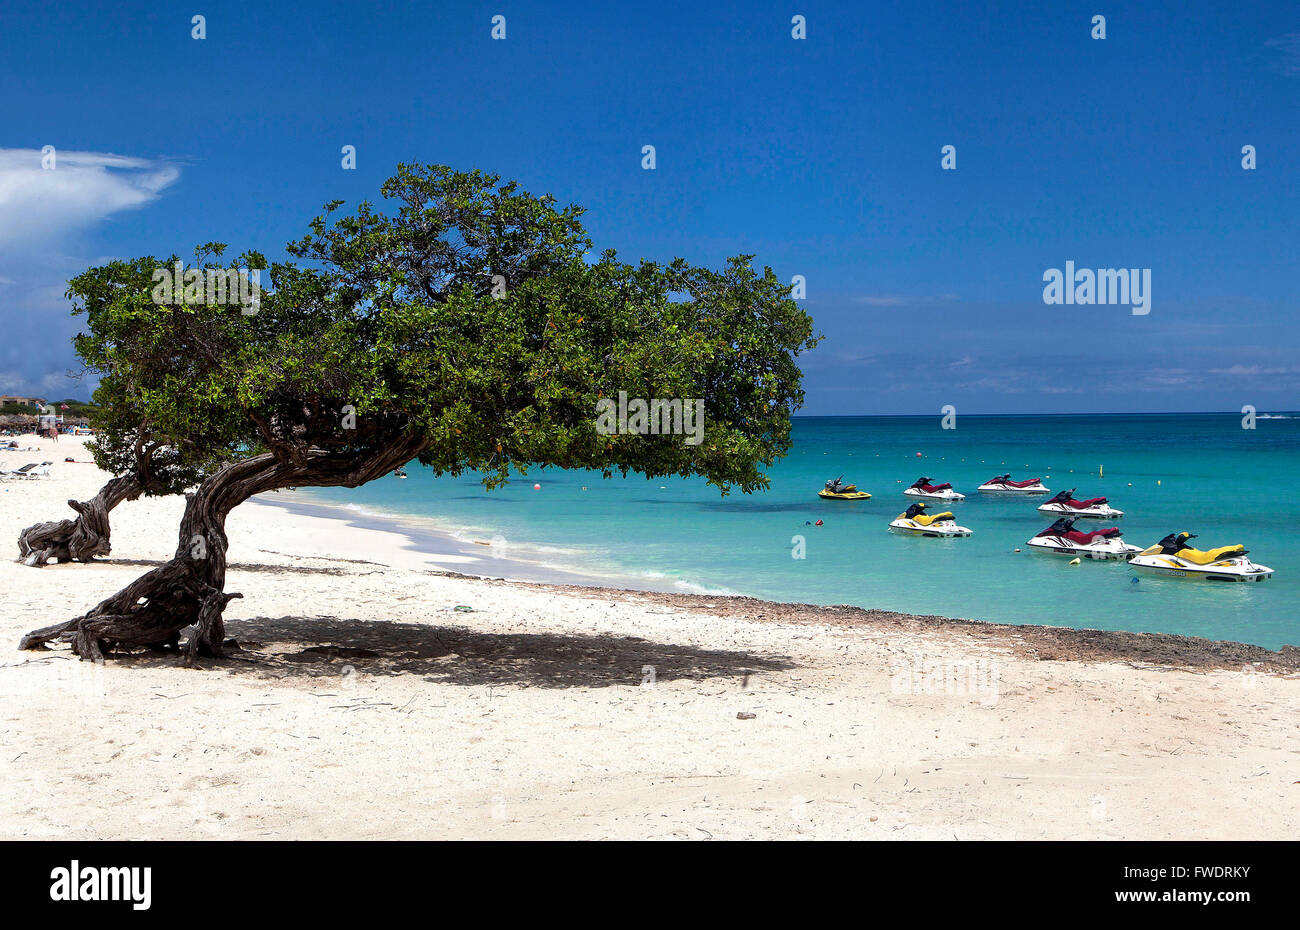 Îles ABC (Aruba, Bonaire et Curaçao) de plus en plus vers le Sud : divi tree sur la plage d'Oranjestad, Aruba Banque D'Images